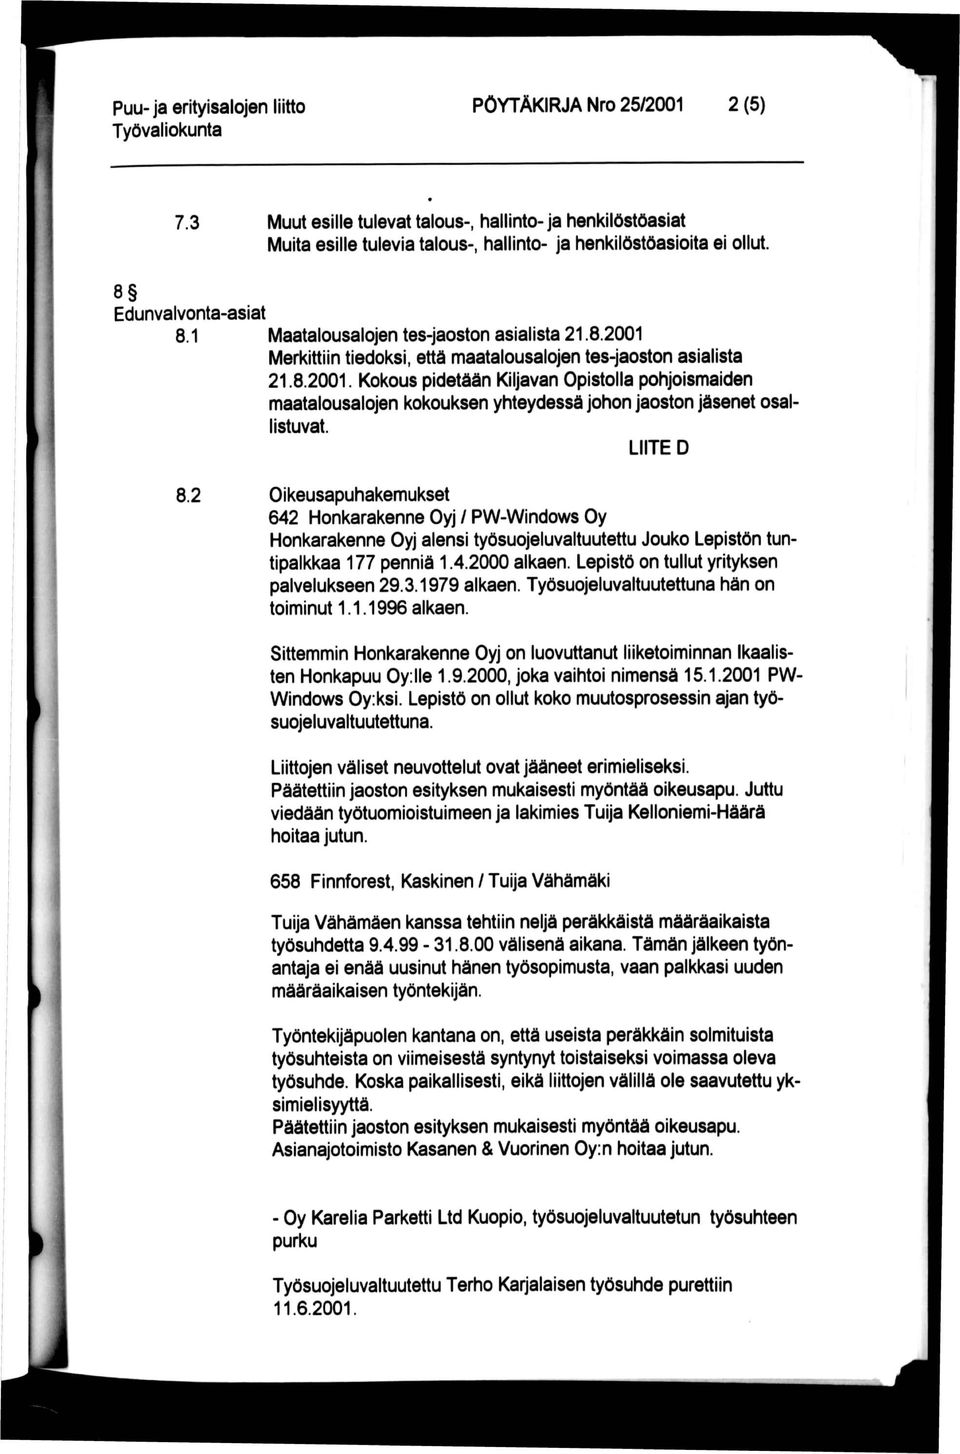 LIITE D 8.2 Oikeusapuhakemukset 642 Honkarakenne Oyj / PW-Windows Oy Honkarakenne Oyj alensi työsuojeluvaltuutettu Jouko Lepistön tuntipalkkaa 177 penniä 1.4.2000 alkaen.